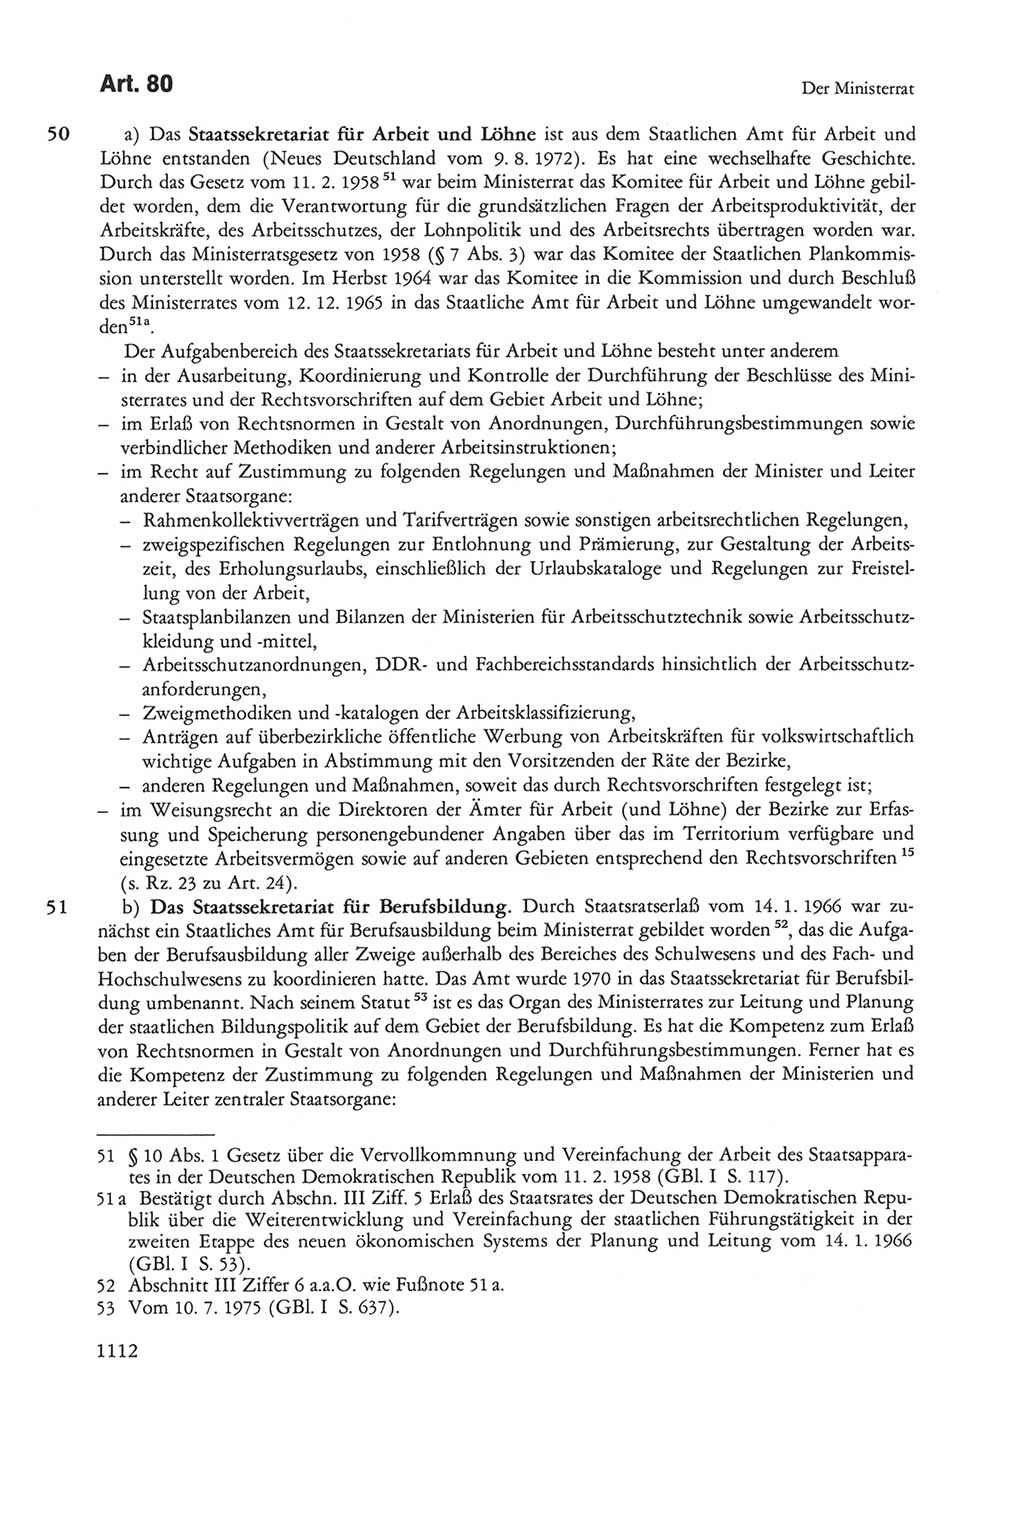 Die sozialistische Verfassung der Deutschen Demokratischen Republik (DDR), Kommentar 1982, Seite 1112 (Soz. Verf. DDR Komm. 1982, S. 1112)